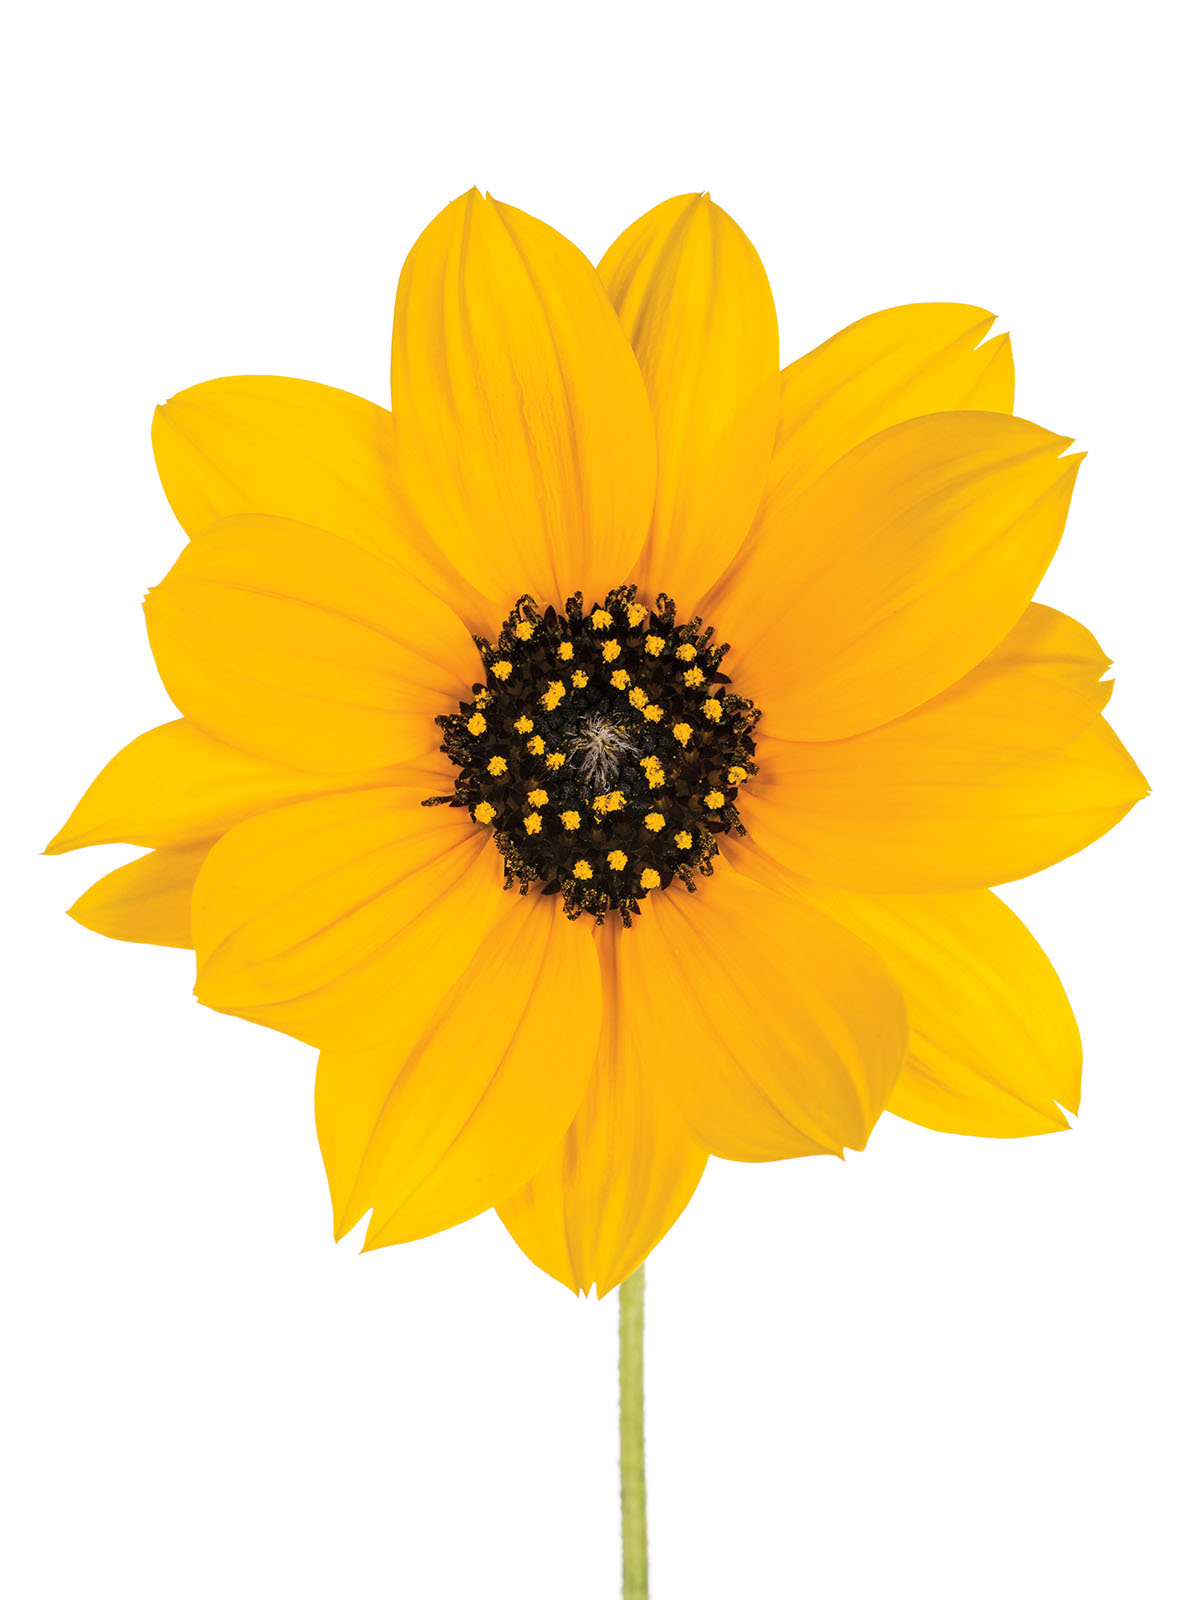 Sun Flower (Helianthus sp.)